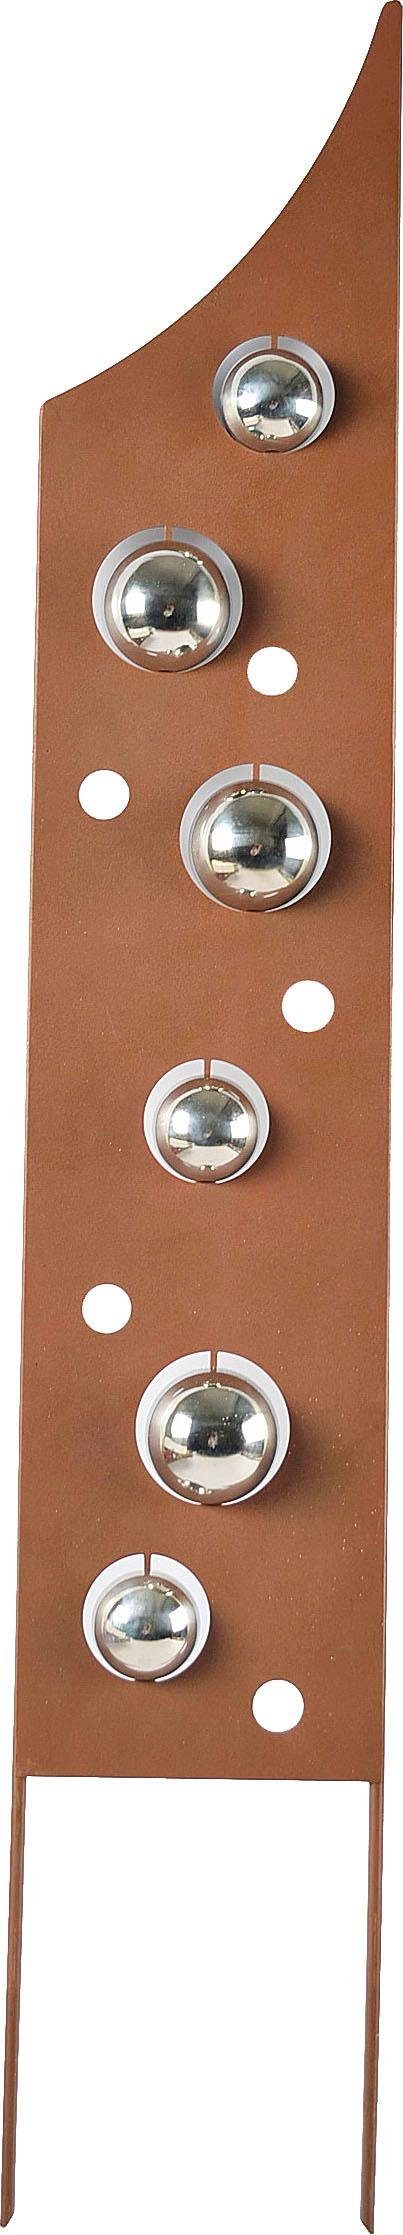 locker Deko-Windrad Rusty Bubbles, in Rostoptik, Materialmix, 99 cm hoch | Deko-Objekte